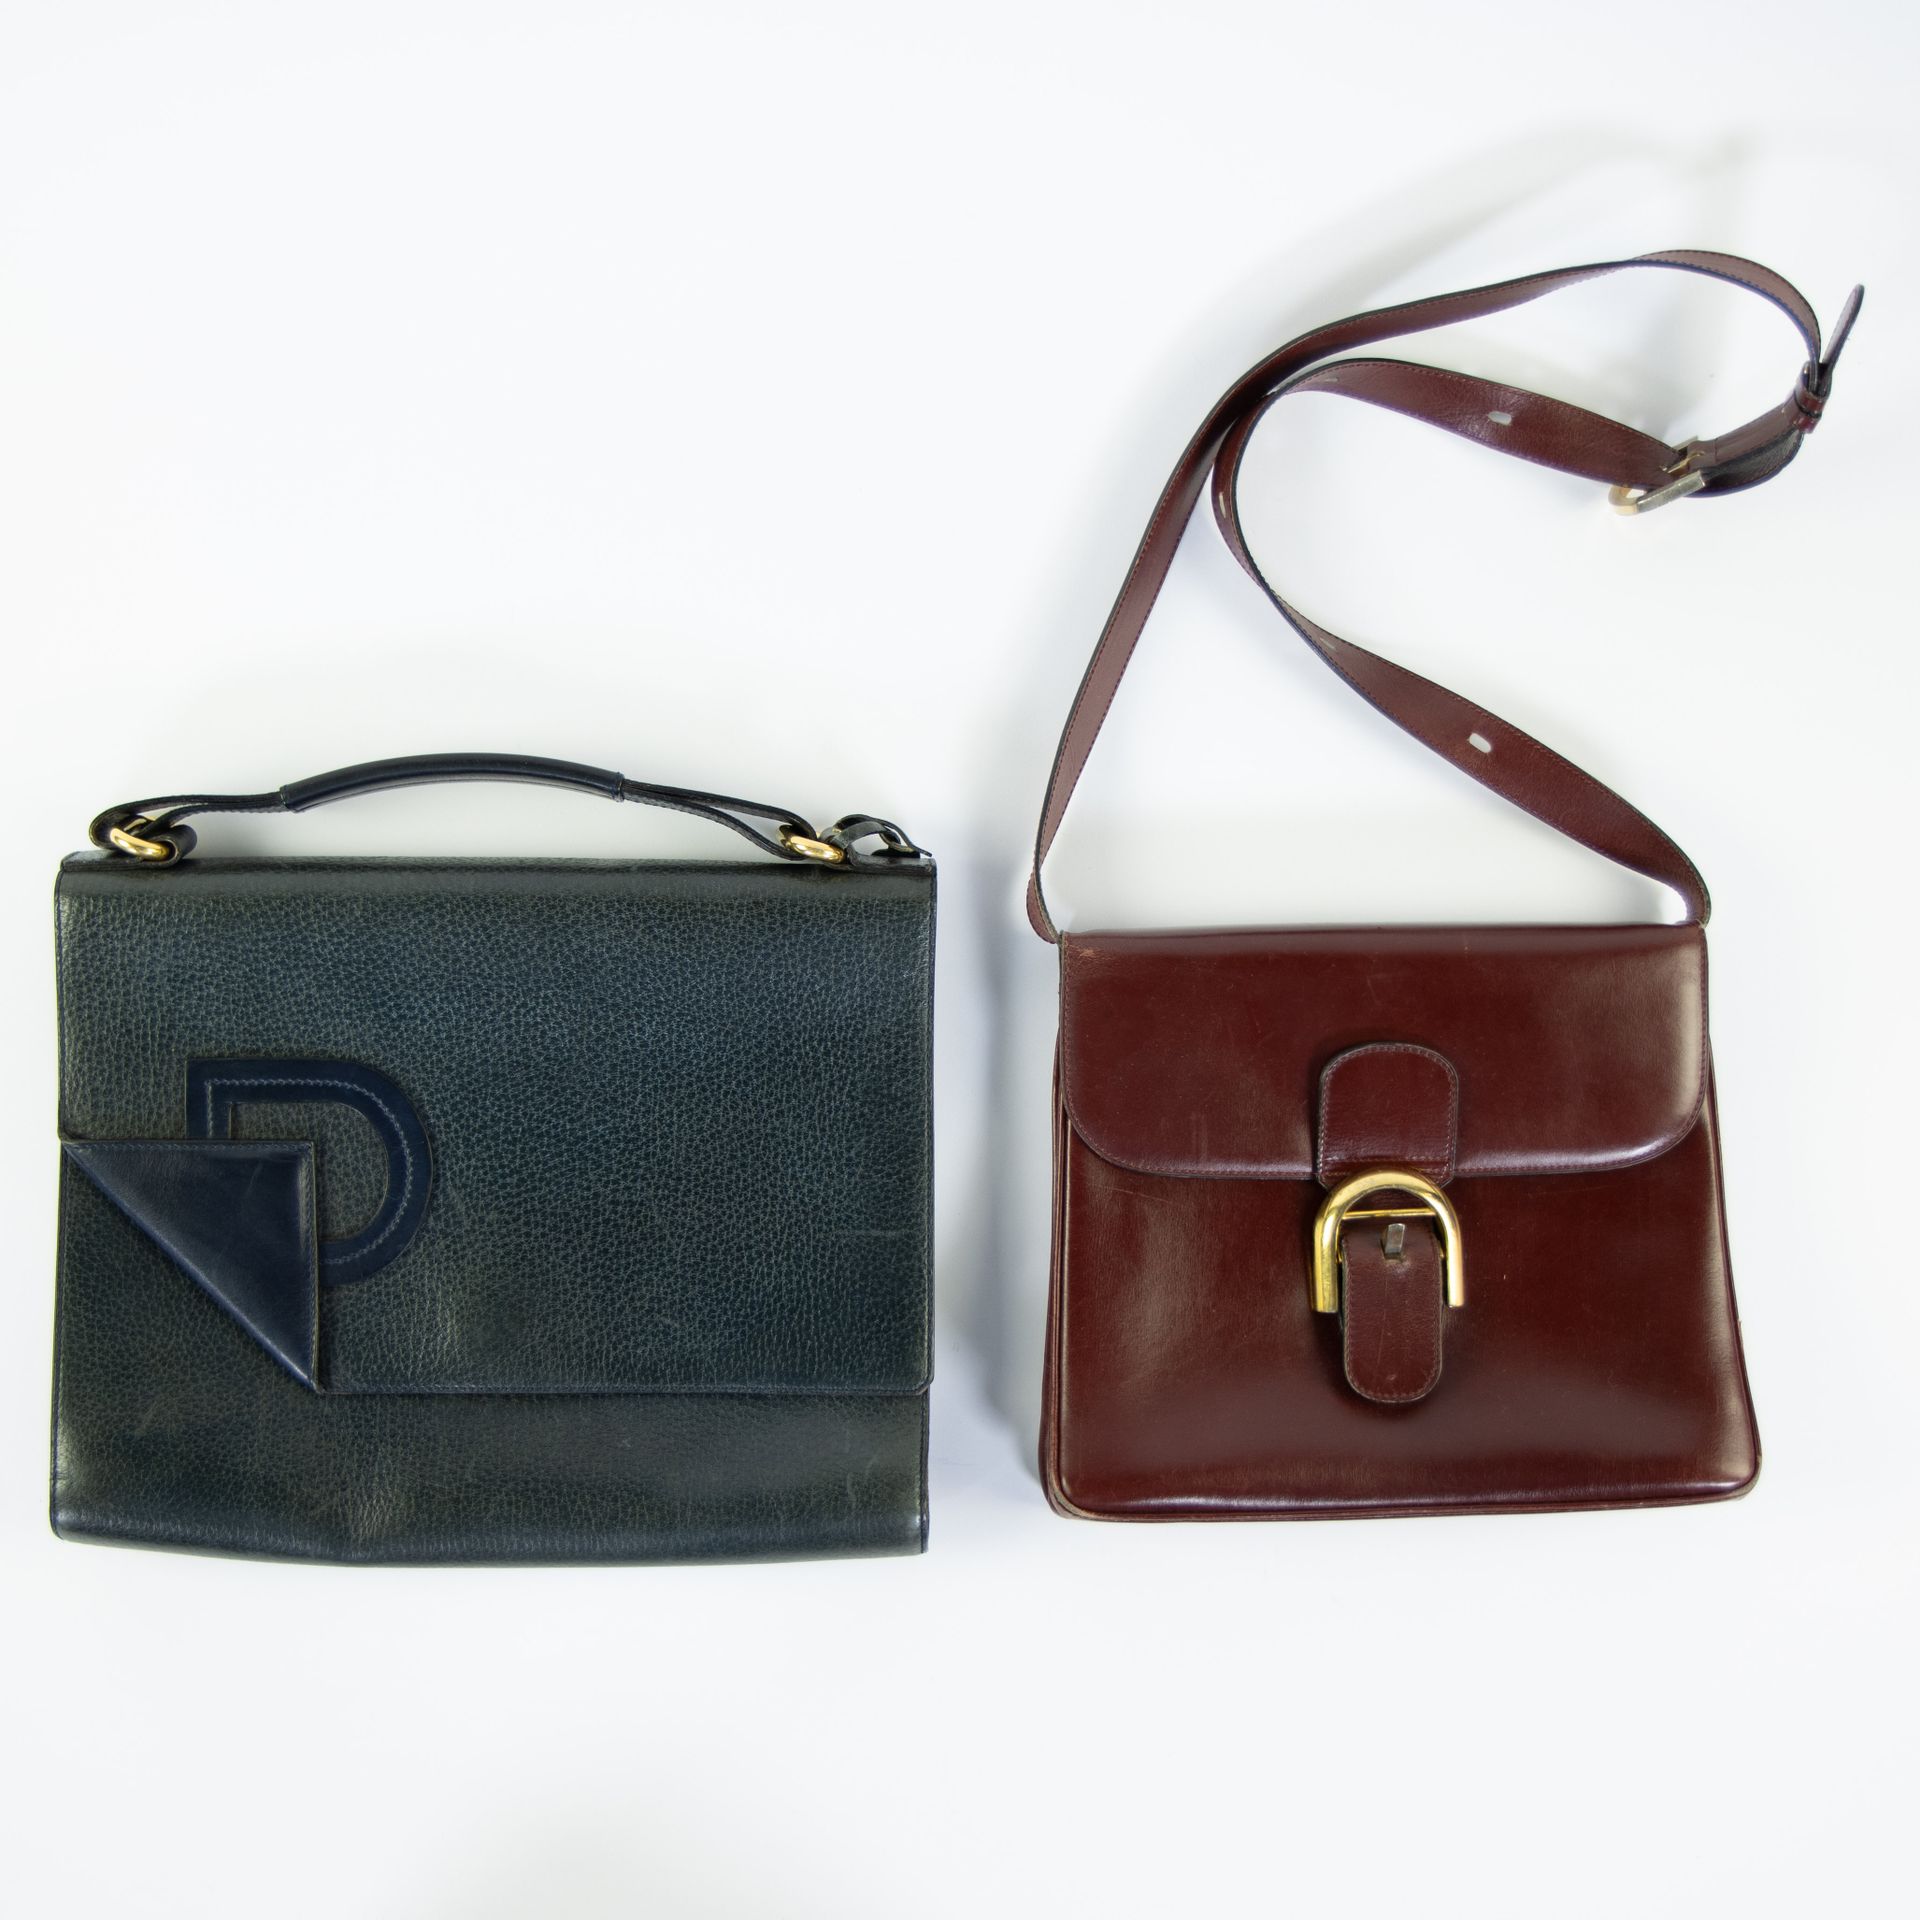 2 leather Delvaux handbags 2 lederen Delvaux handtassen …